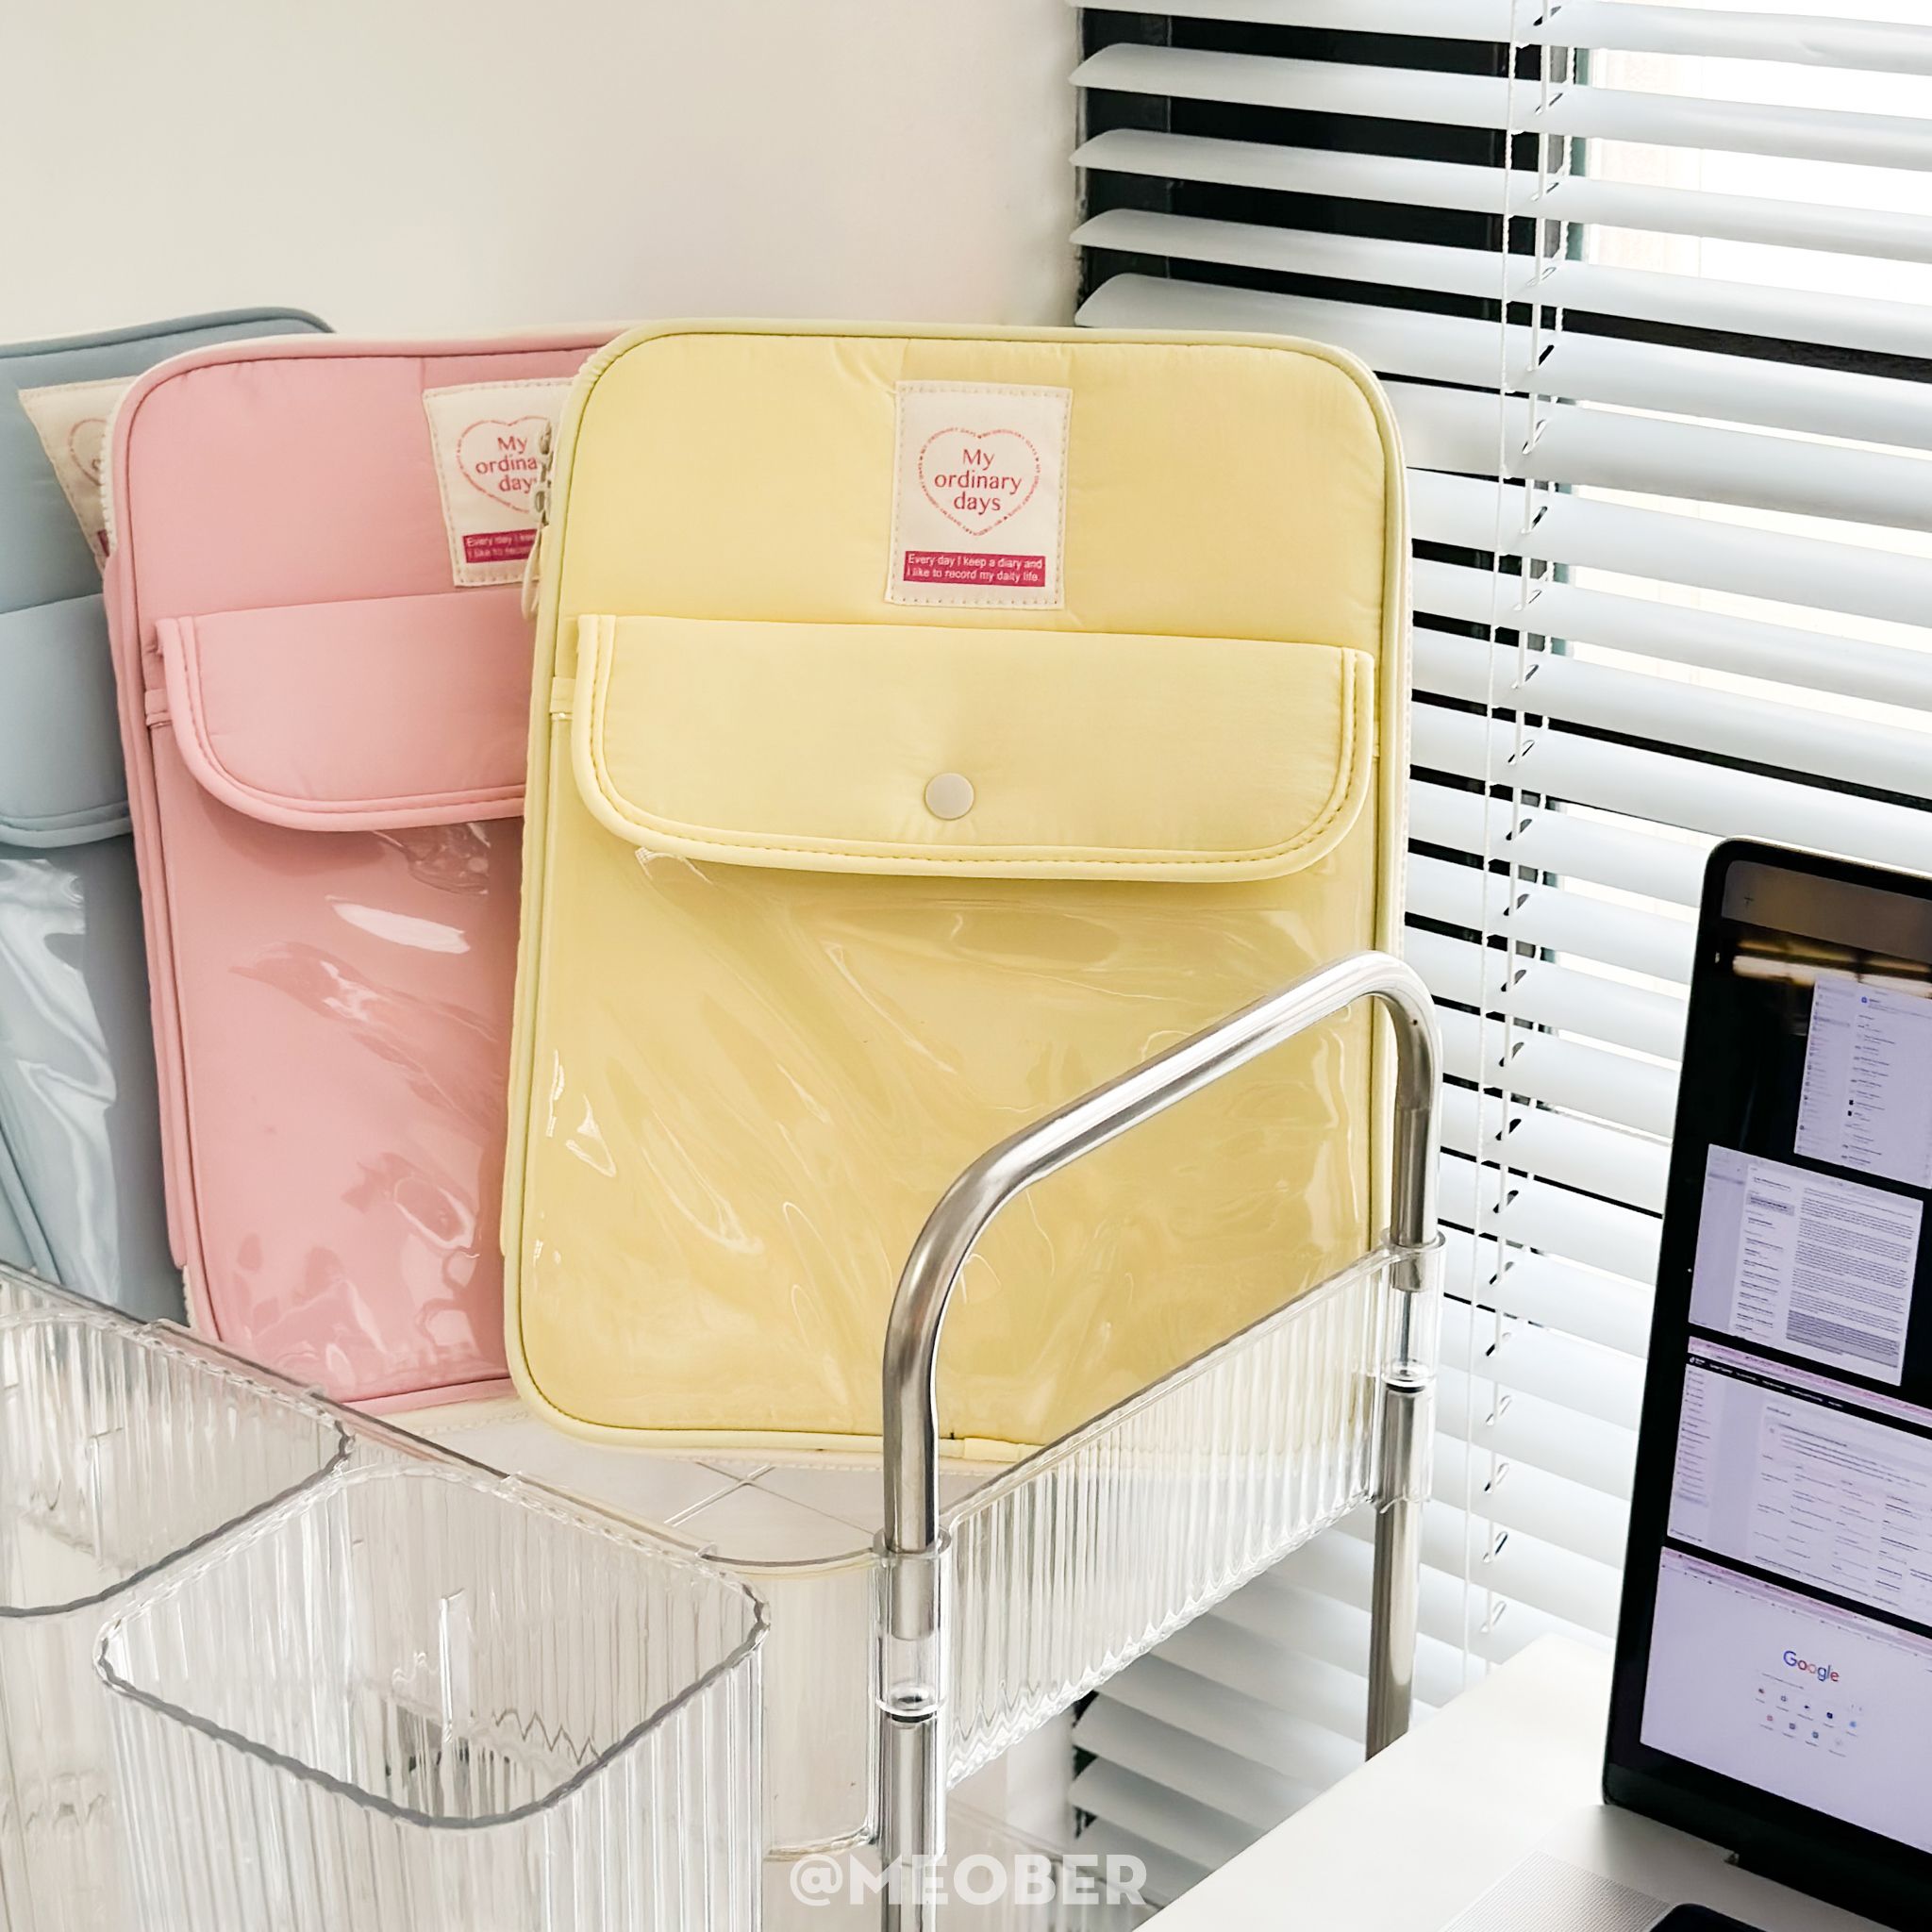  Túi chống sốc cho iPad & Laptop đa năng Basic Daily Korea Style - Thiết kế tối giản pastel, chia ngăn thông minh bảo vệ tối đa by MèoBer 